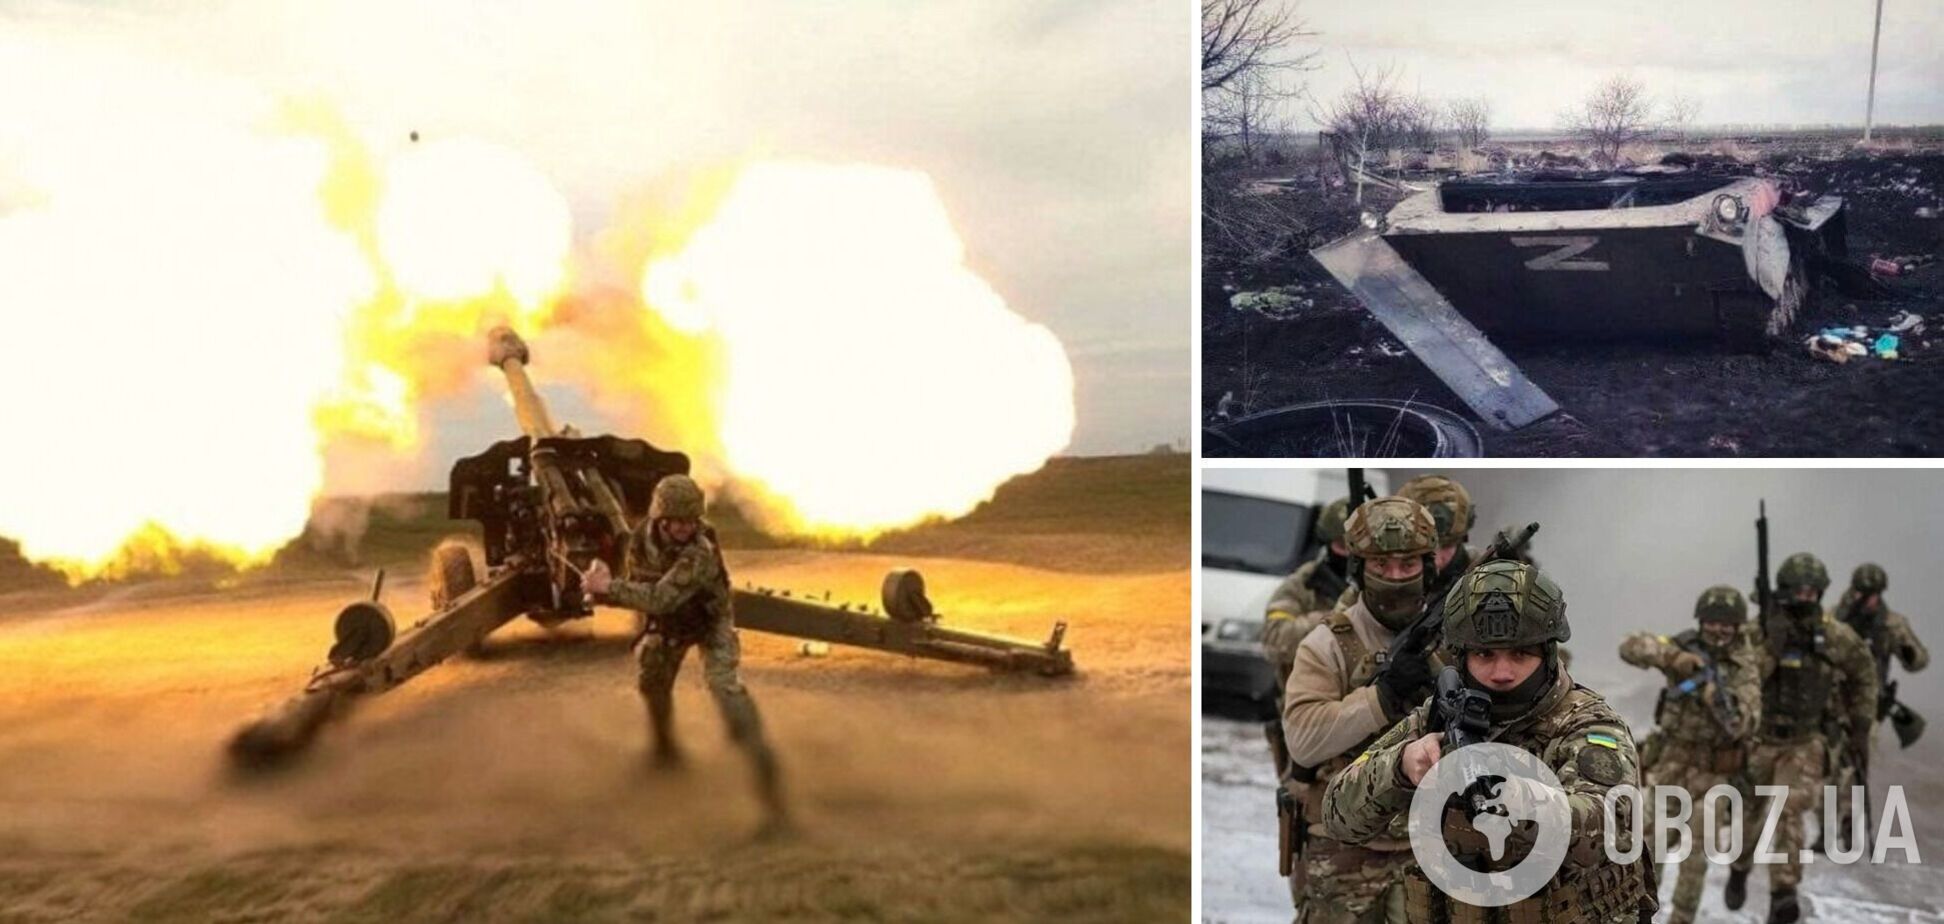 Войска РФ на юге оттягивают силы подальше от линии столкновения, скрываясь от огневого поражения ВСУ, – Гуменюк